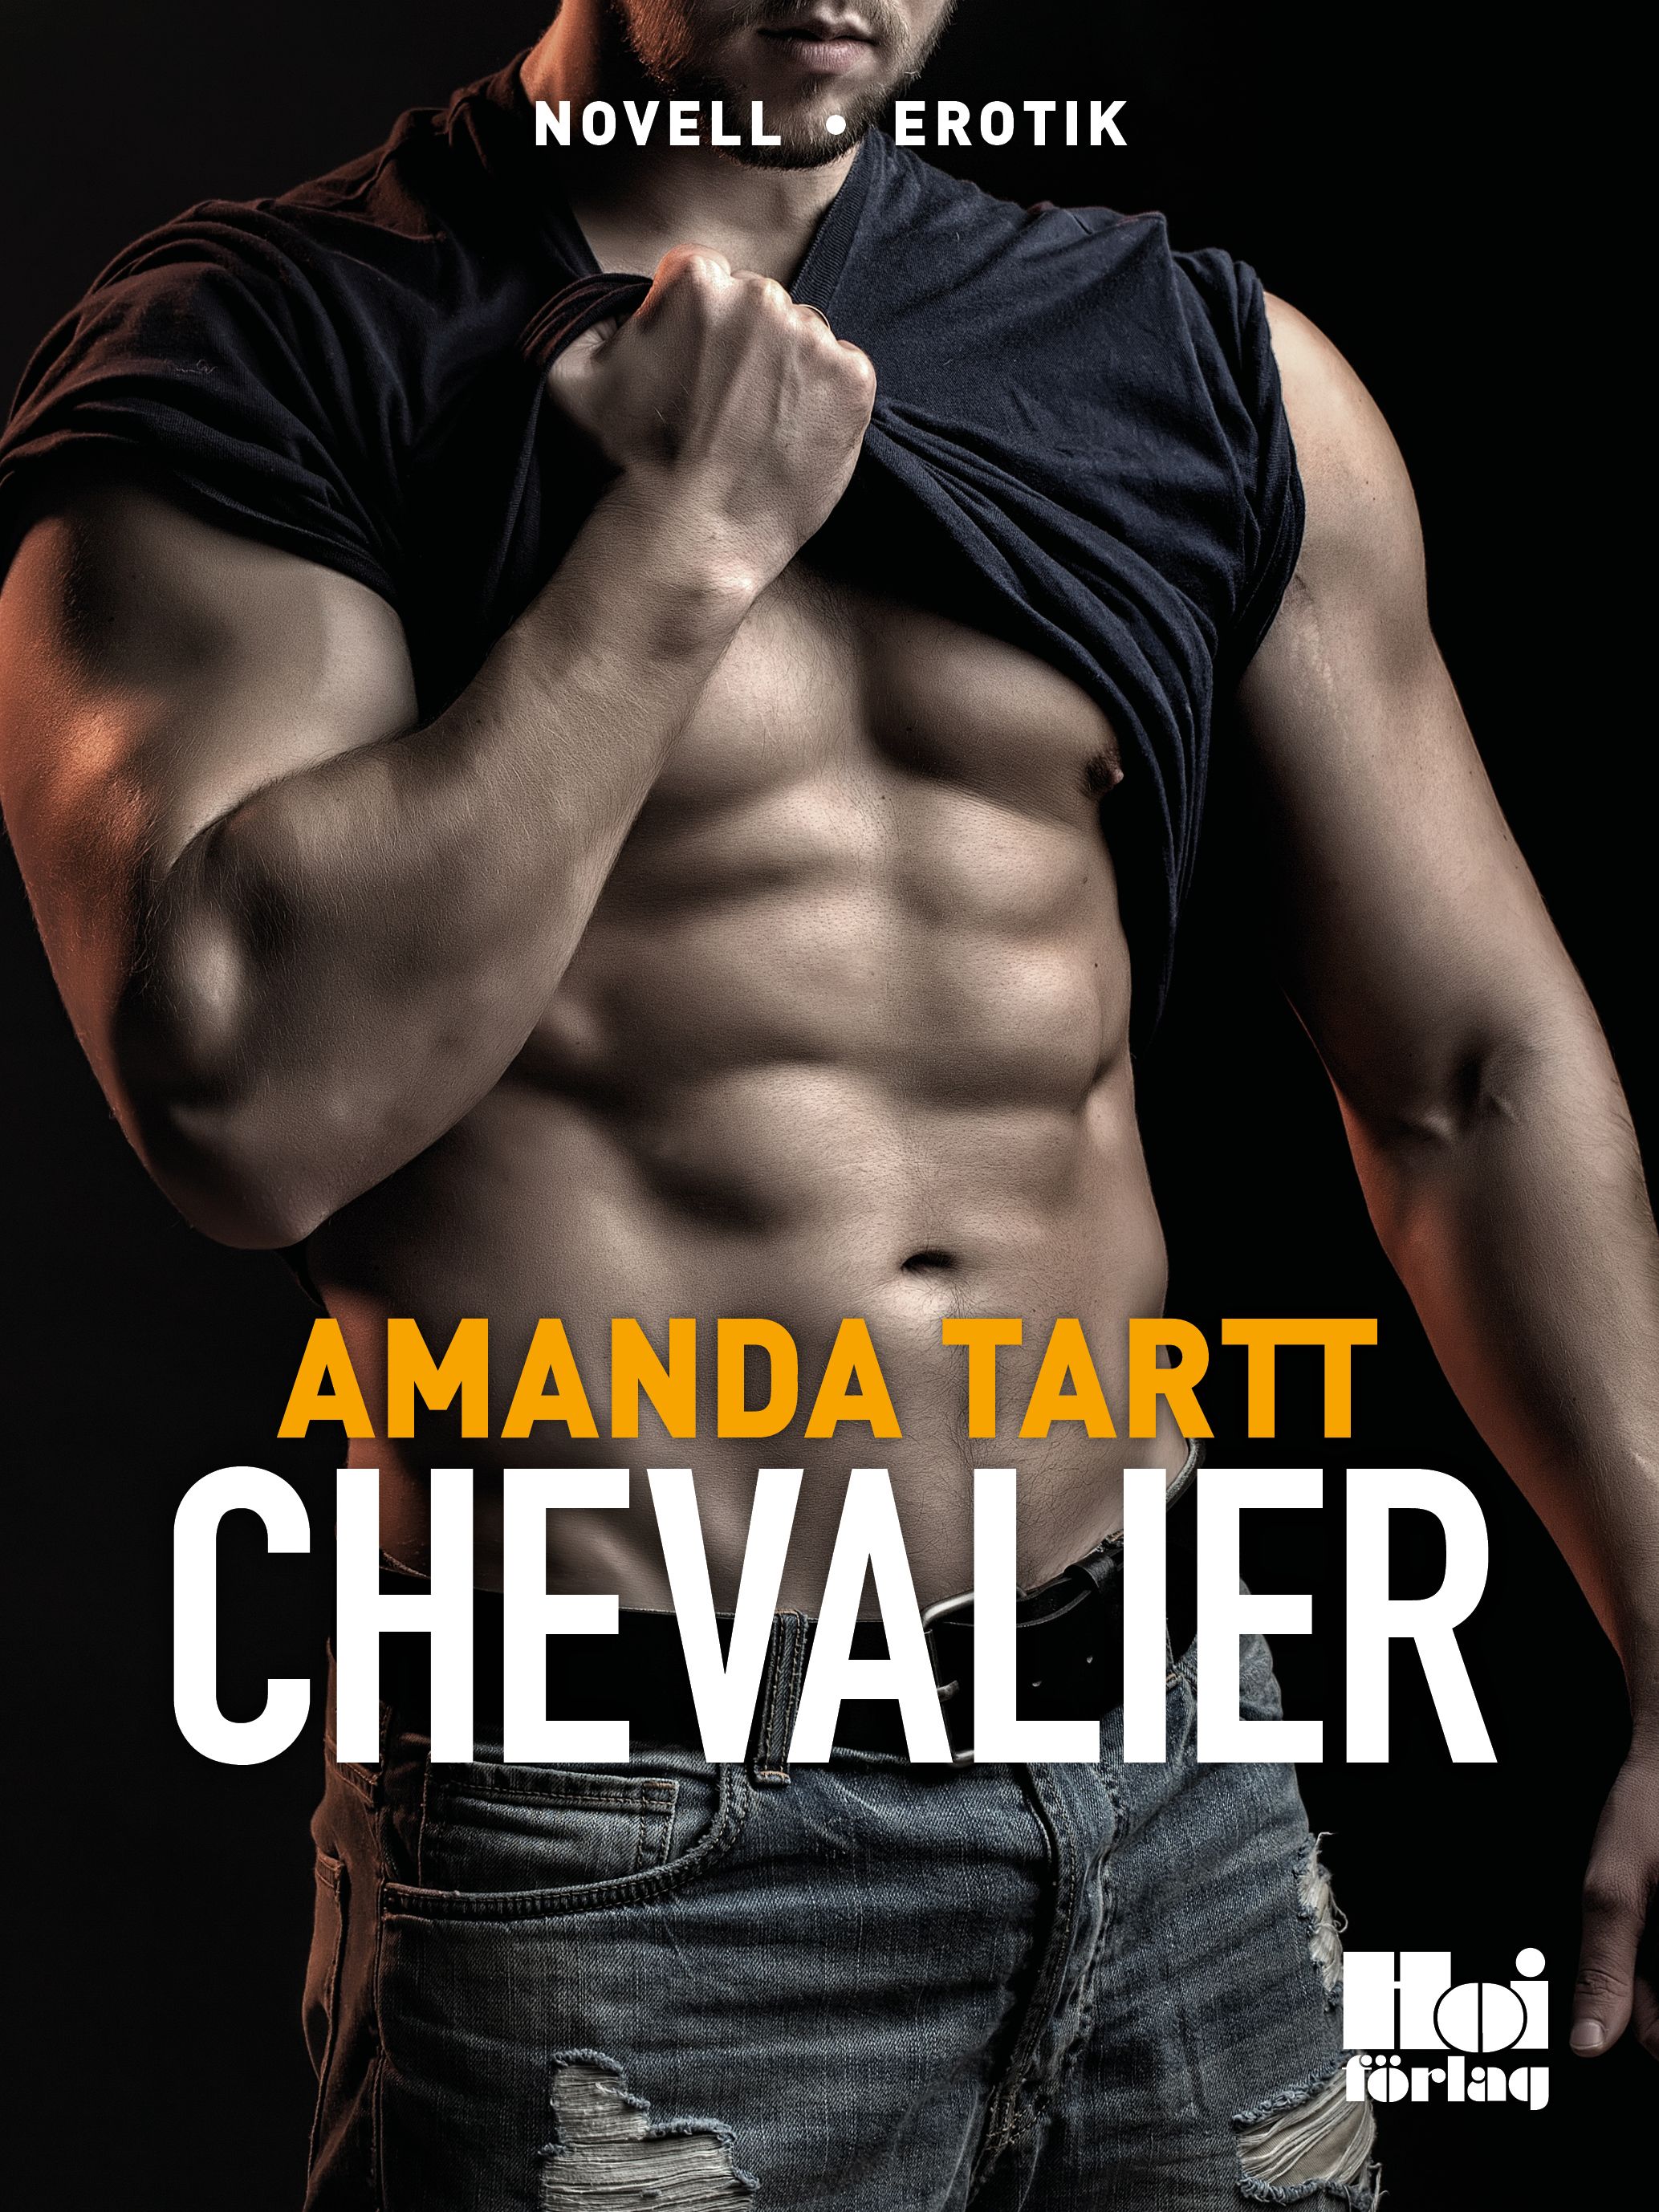 Chevalier, e-bok av Amanda Tartt